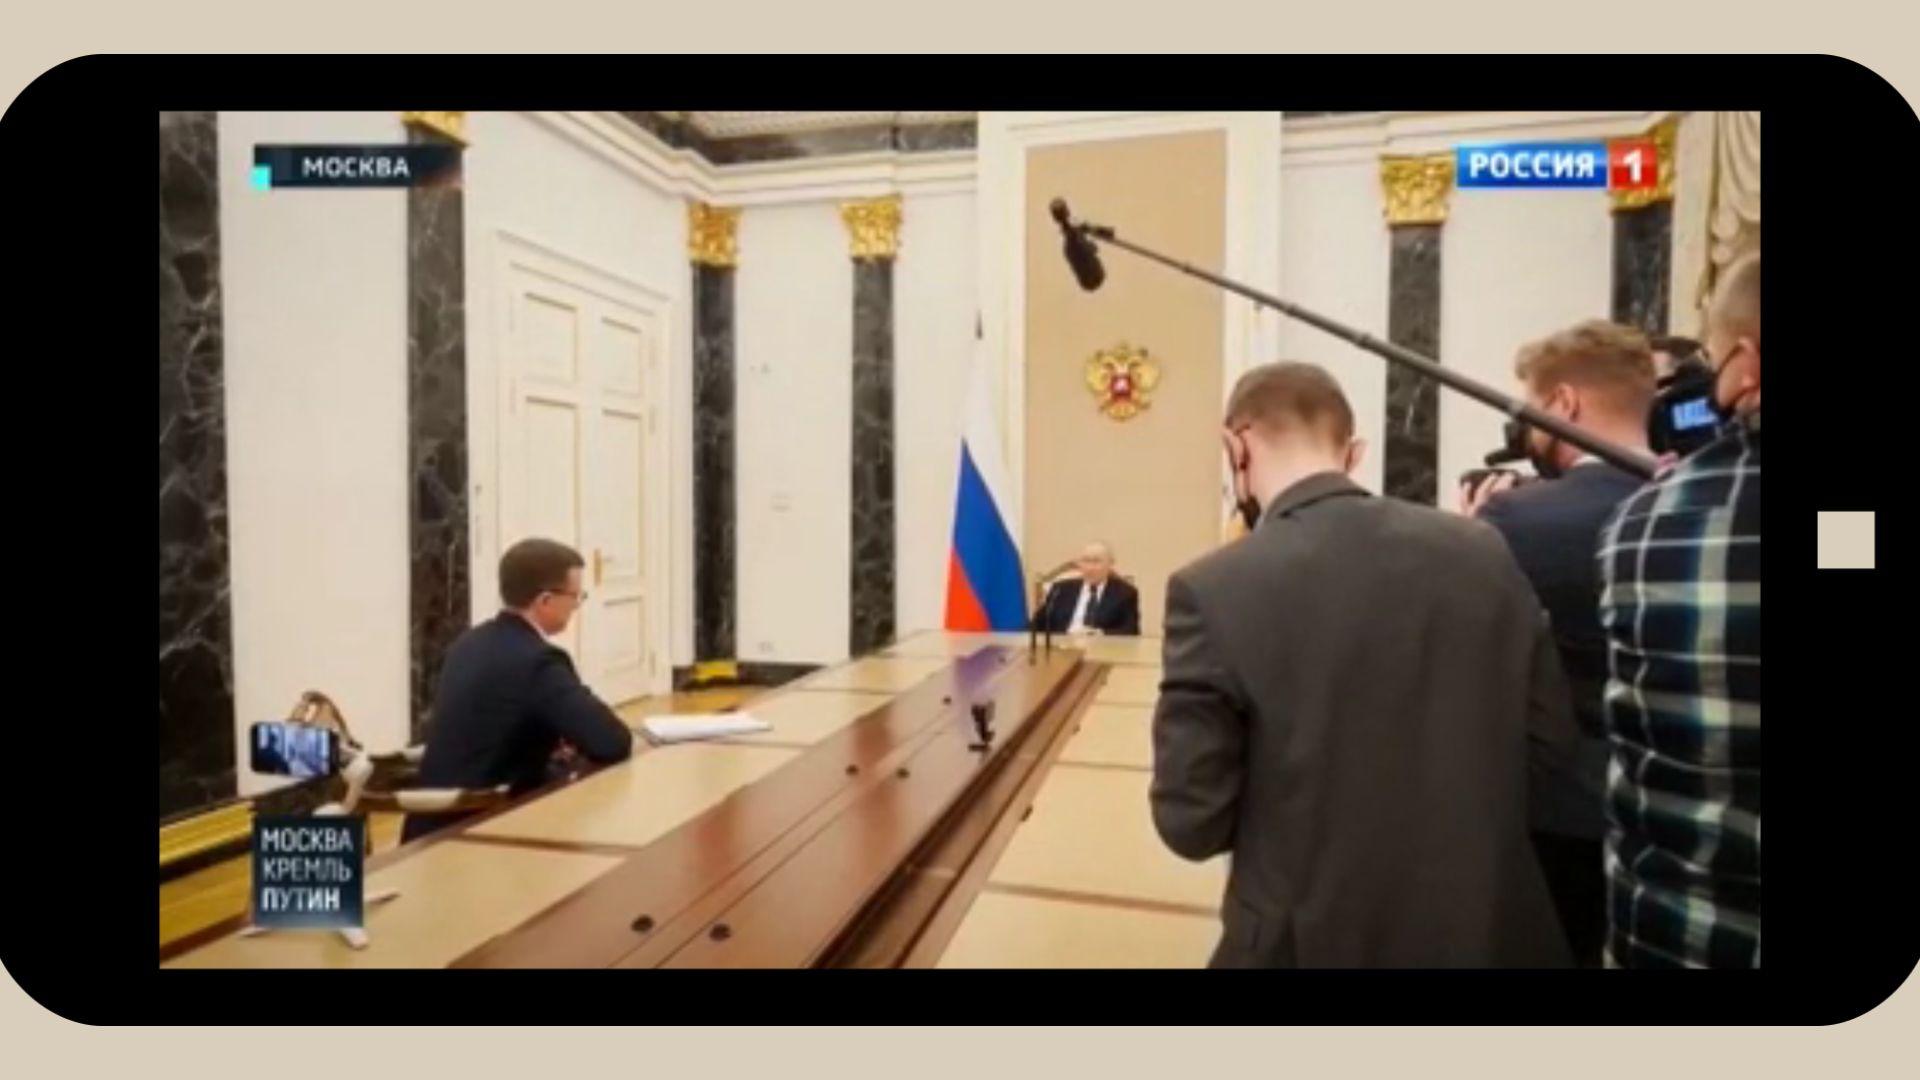 Grafika: w ramke telefinu komórkowego wklejony kadr z wywiadu Putina z Pawłem Zarubinem: Putin siedzi u szczytu bardzo długiego stołu. W połowie stołu - młody mężczyzna (Zarubin), na drugim końcu - kamerzyści i operatorzy dźwięku w maskach